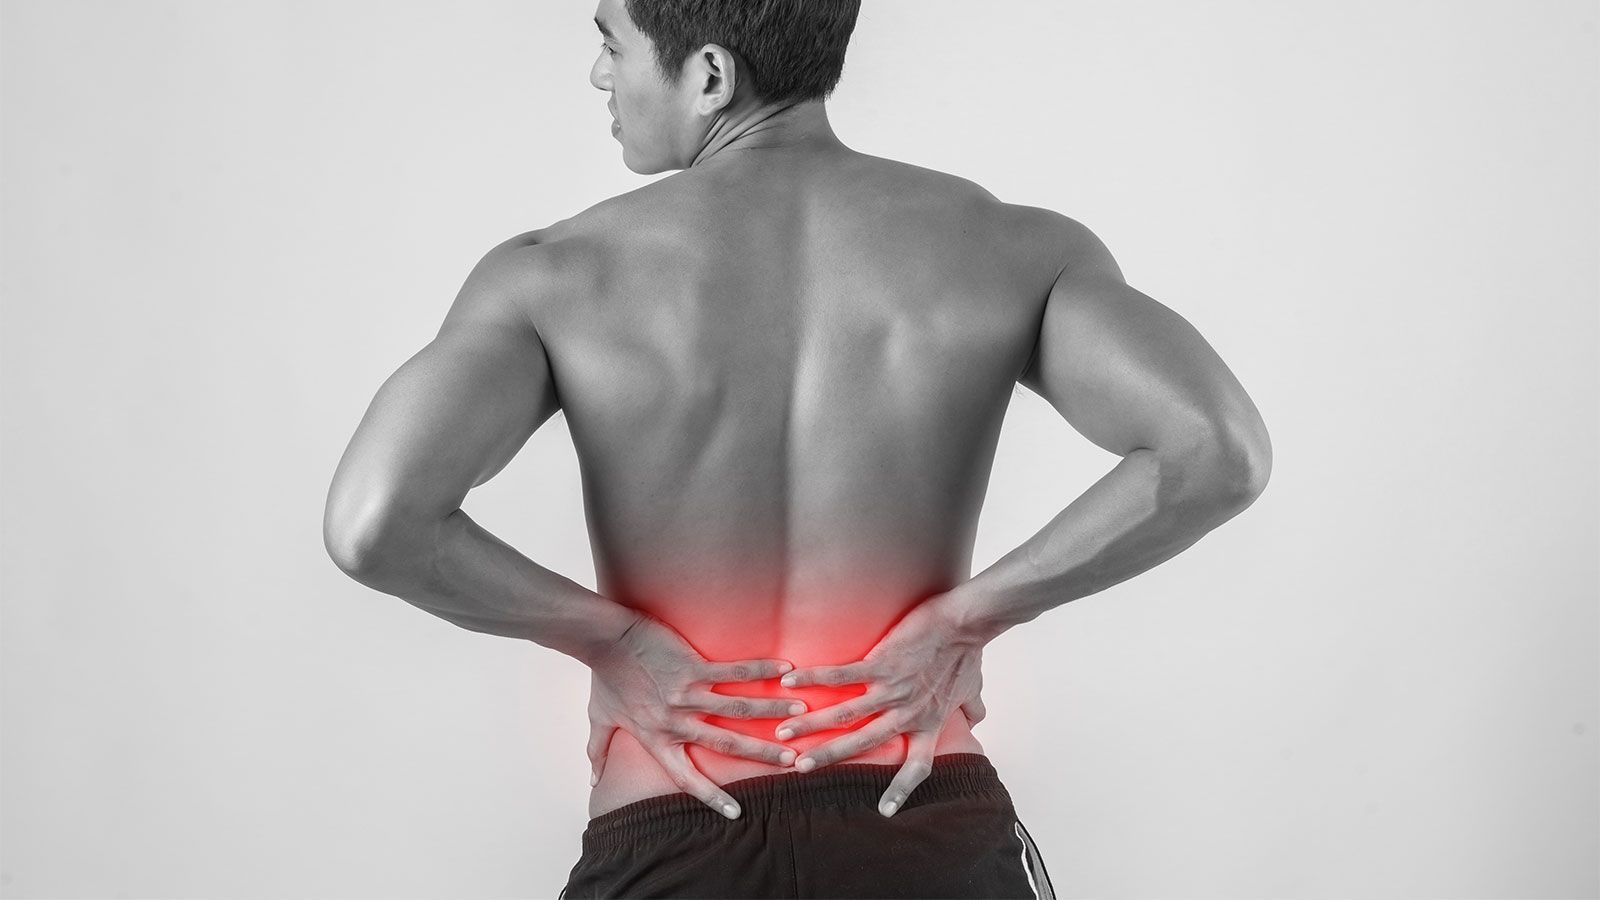 Поясница 18. Боль в спине. Фото со спины. Мужское тело спина. Мышцы человека боль в спине.